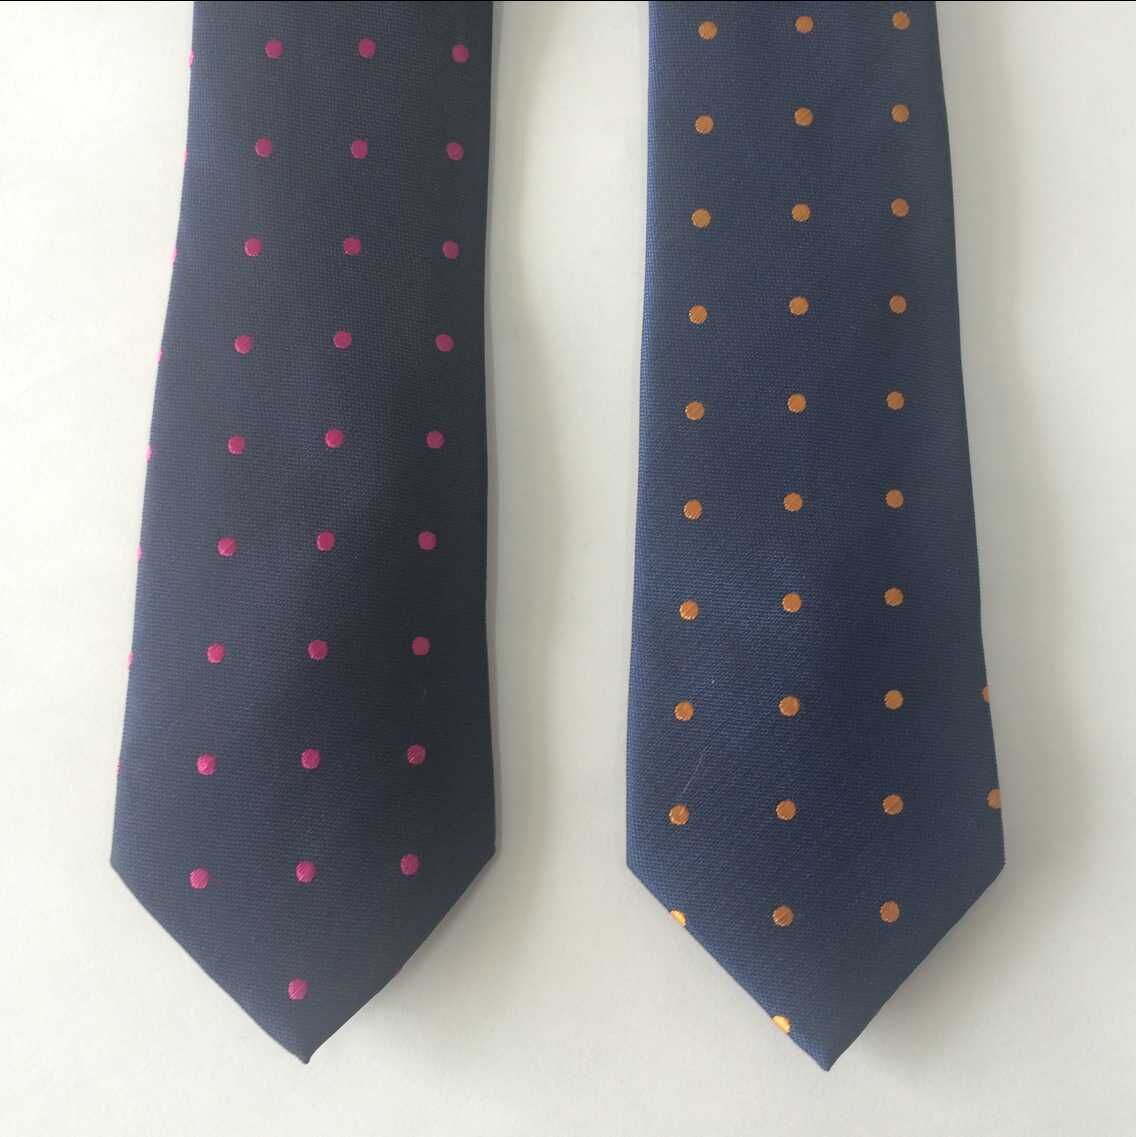 Yarn Dyed Fashion Neckties